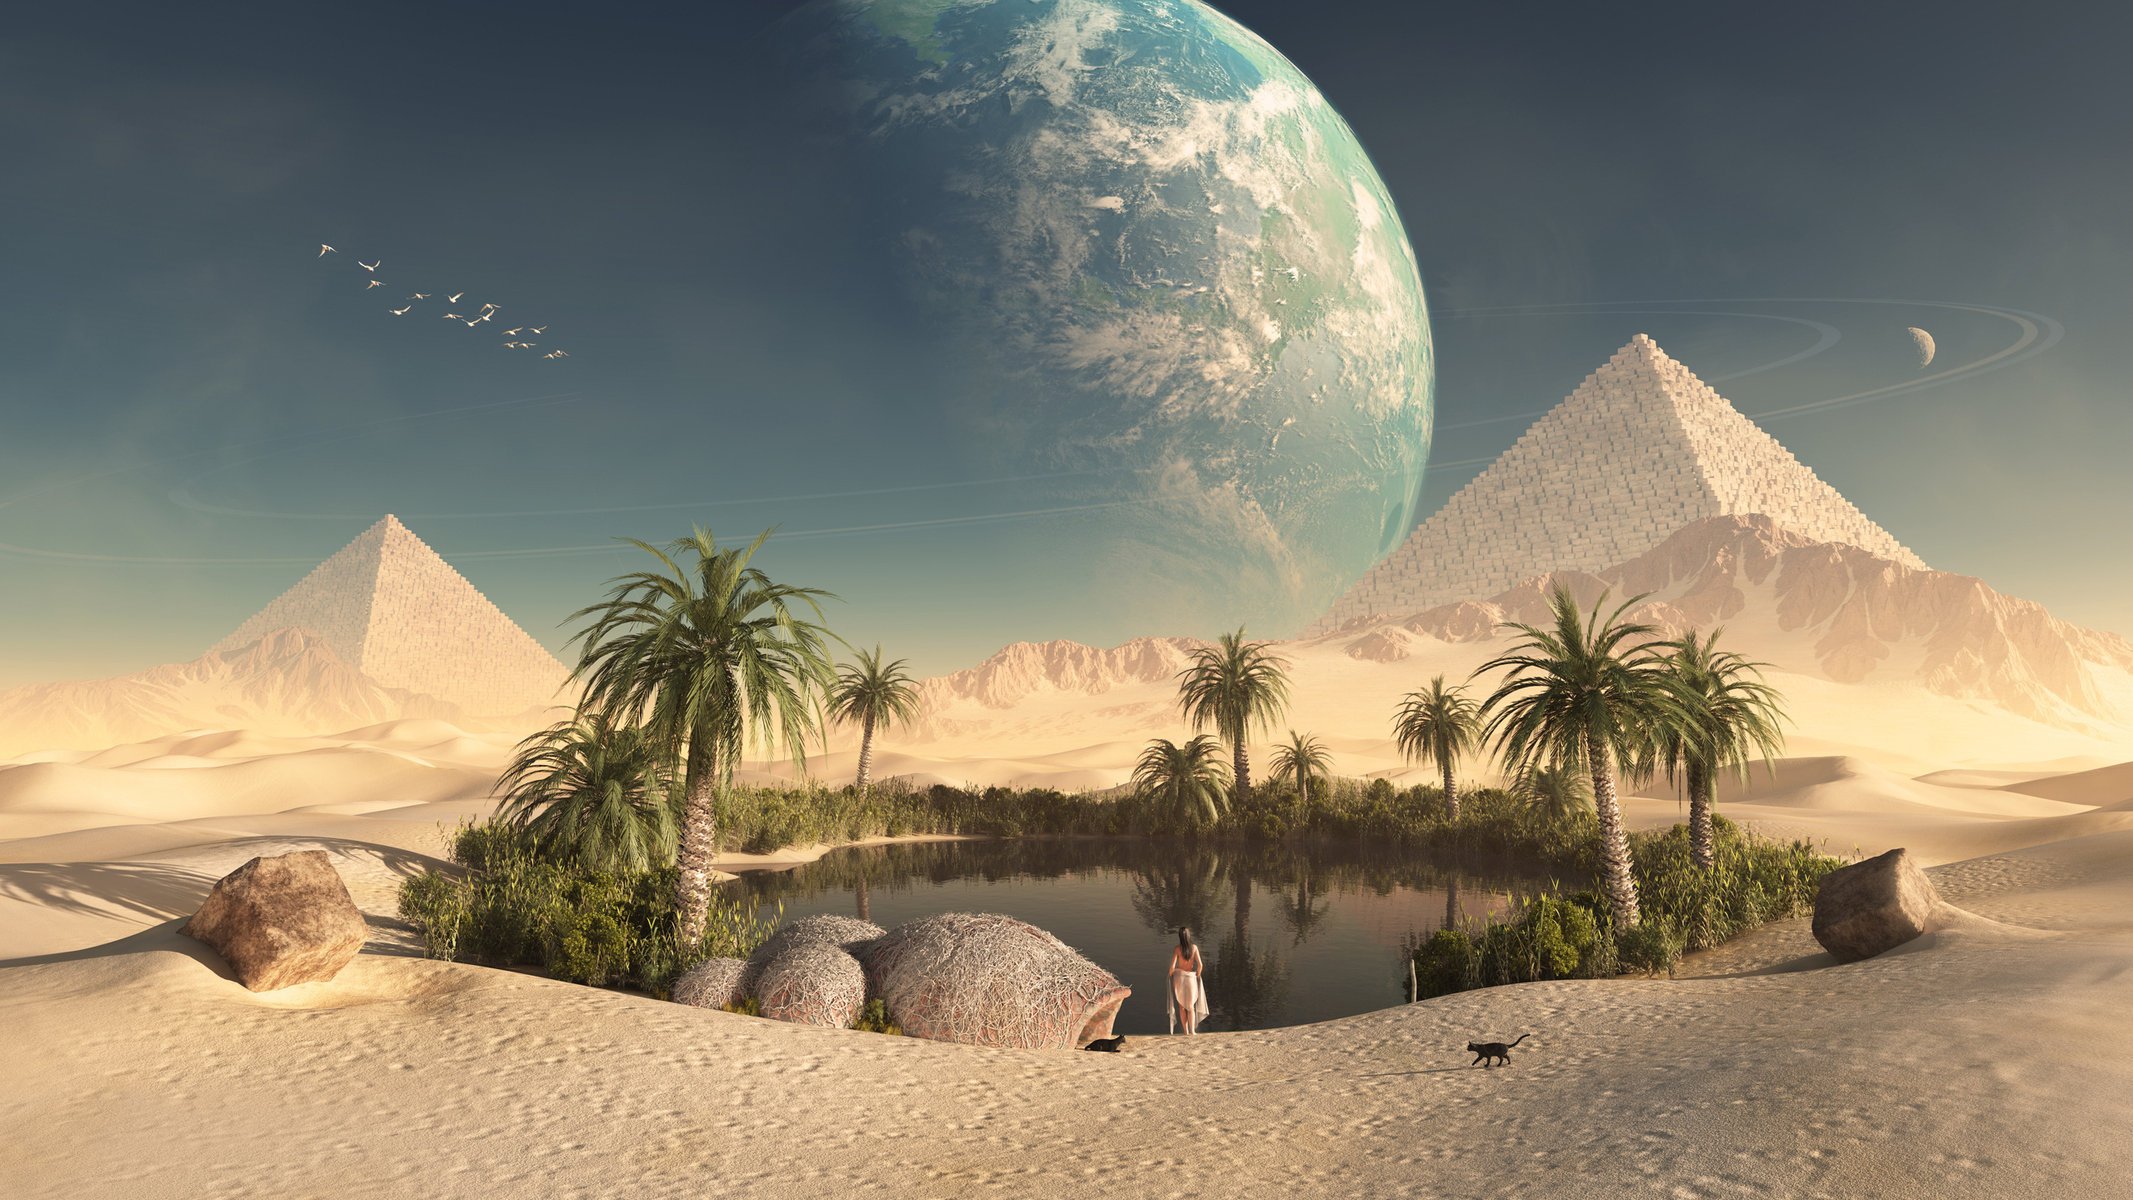 Планета земля в небе над пирамидами и оазисом